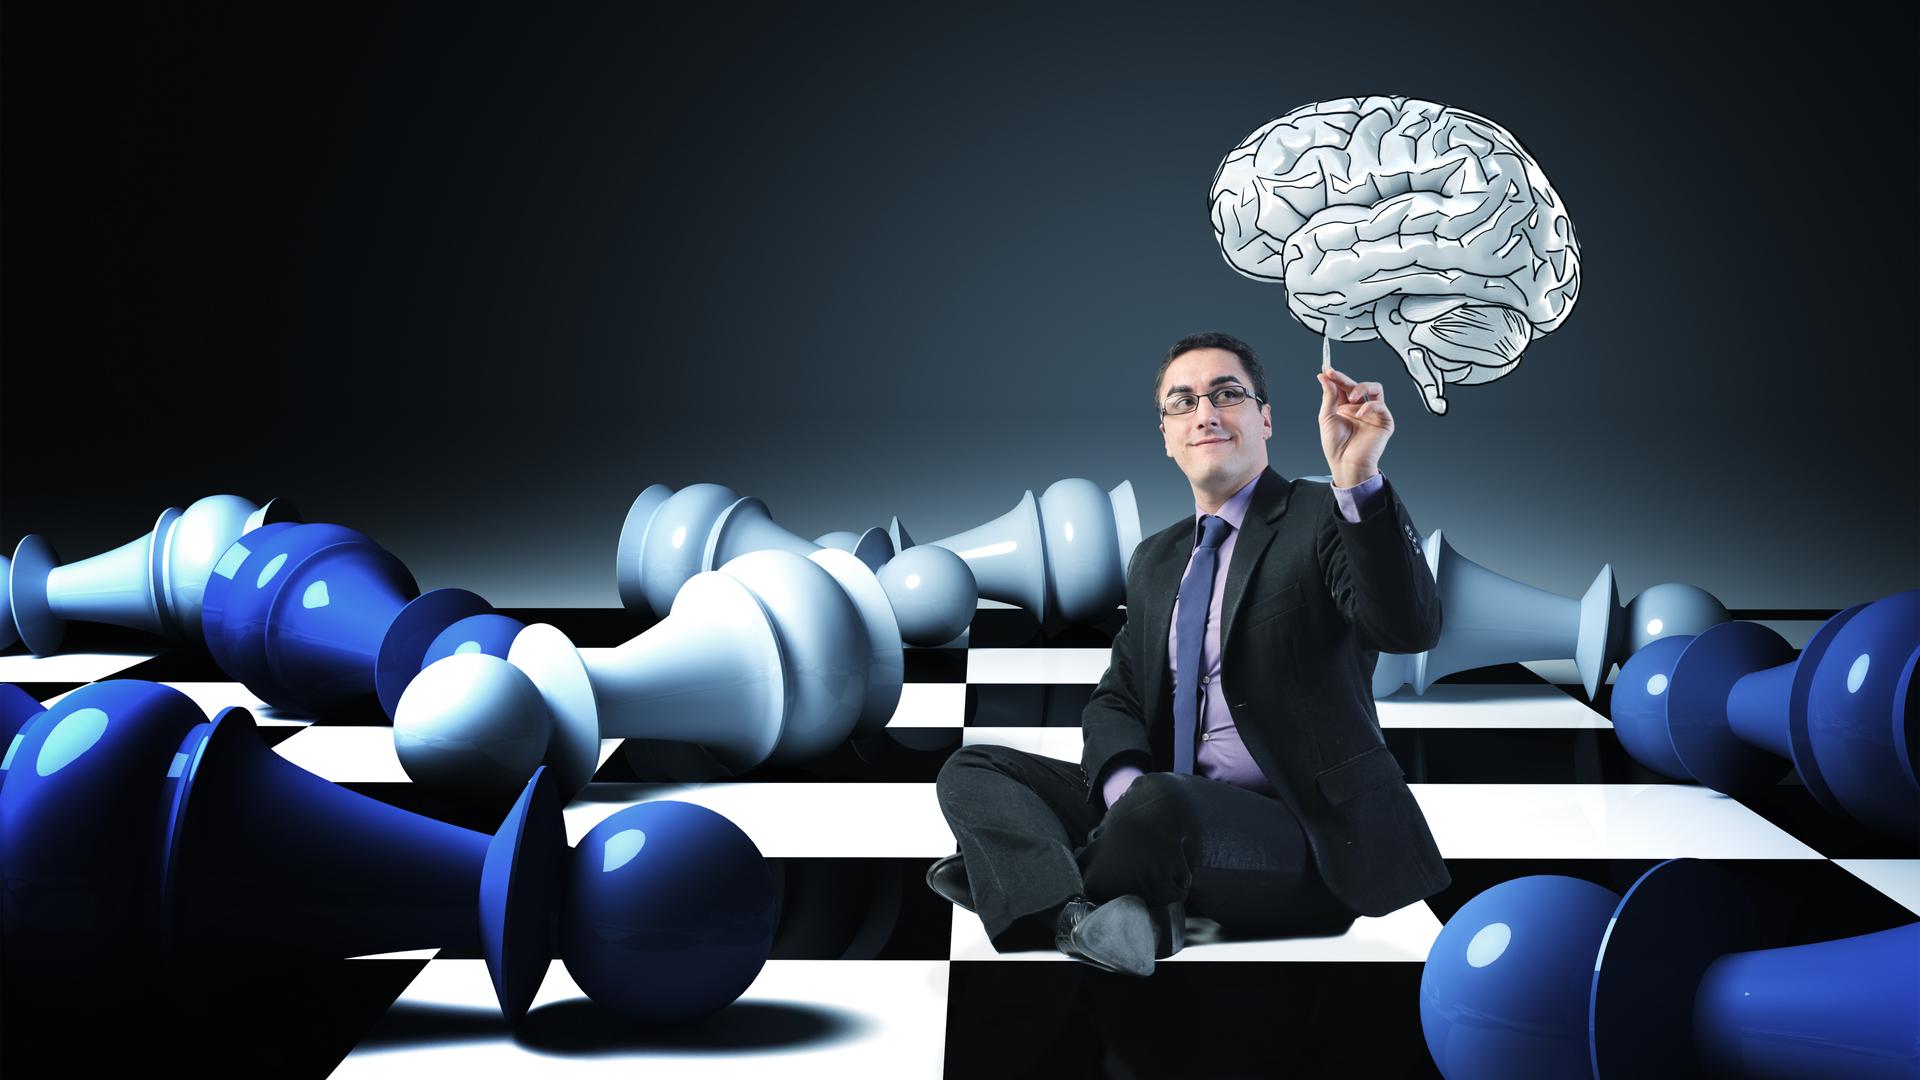 Estudo do xadrez descobriu a idade do pico cognitivo – TICtank